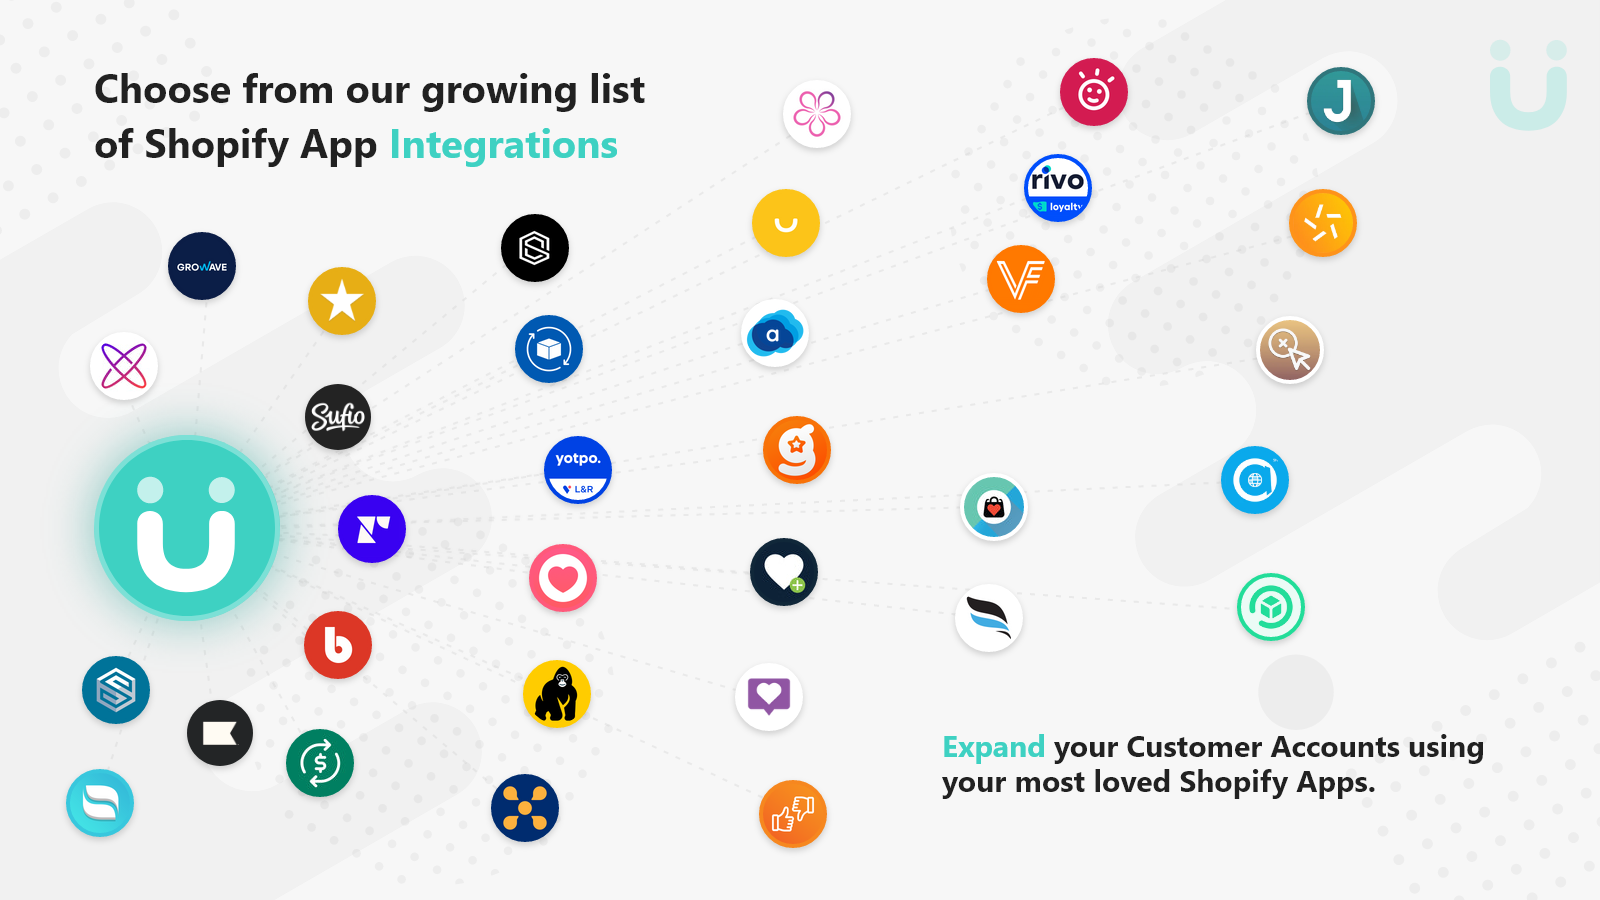 Kies uit onze groeiende lijst van 78 app-integraties